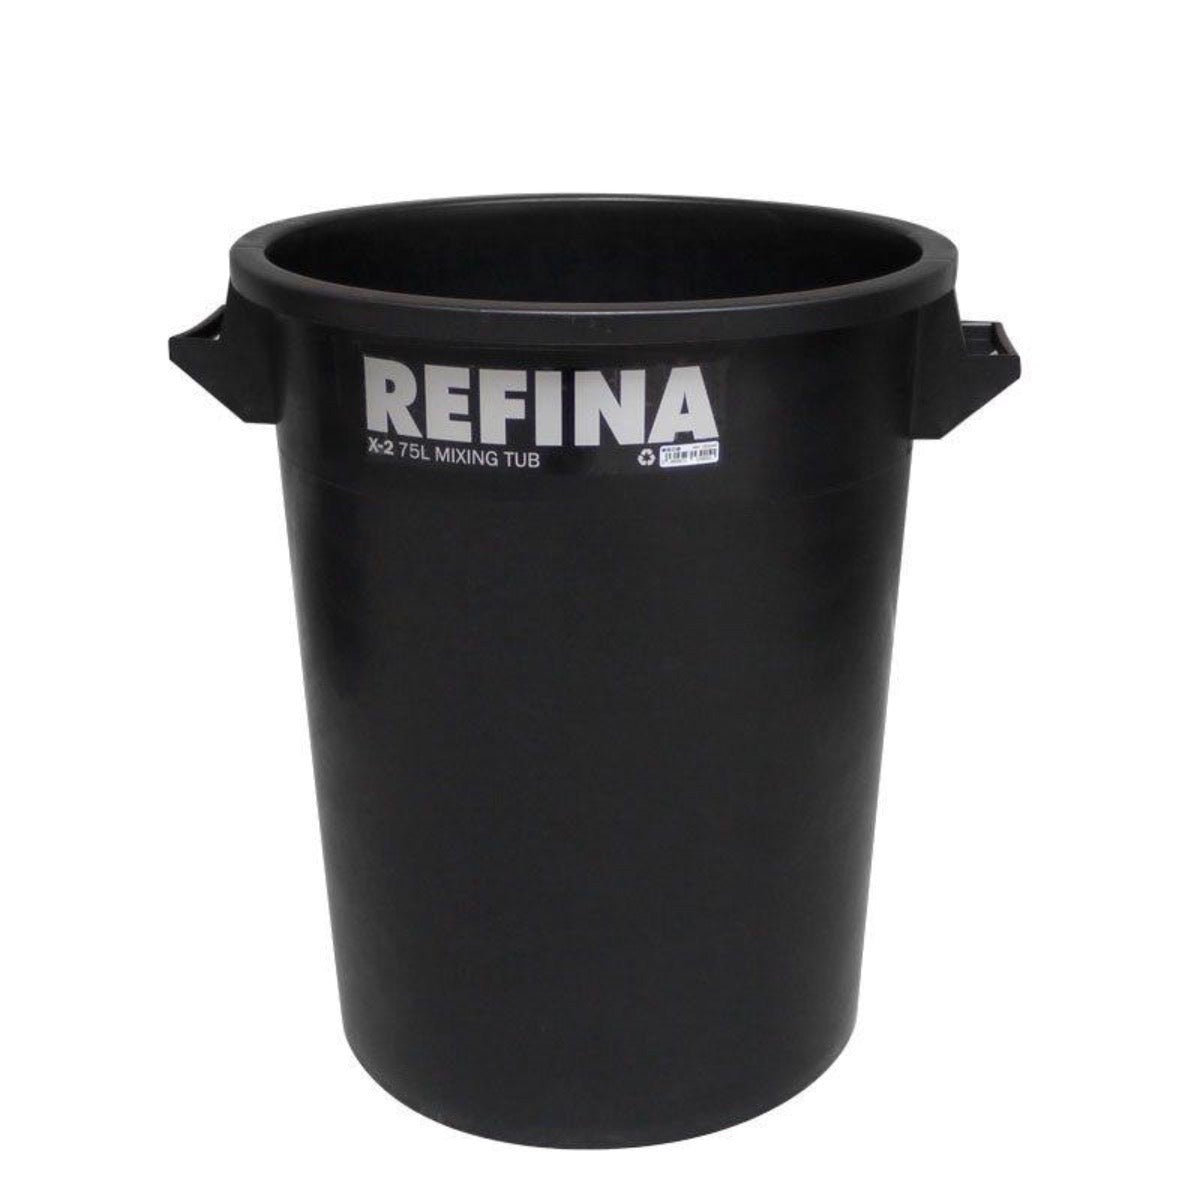 Refina X-2 plastic mixing tub 75L black (321042) - Amaroc - Render & Drylining Supplies